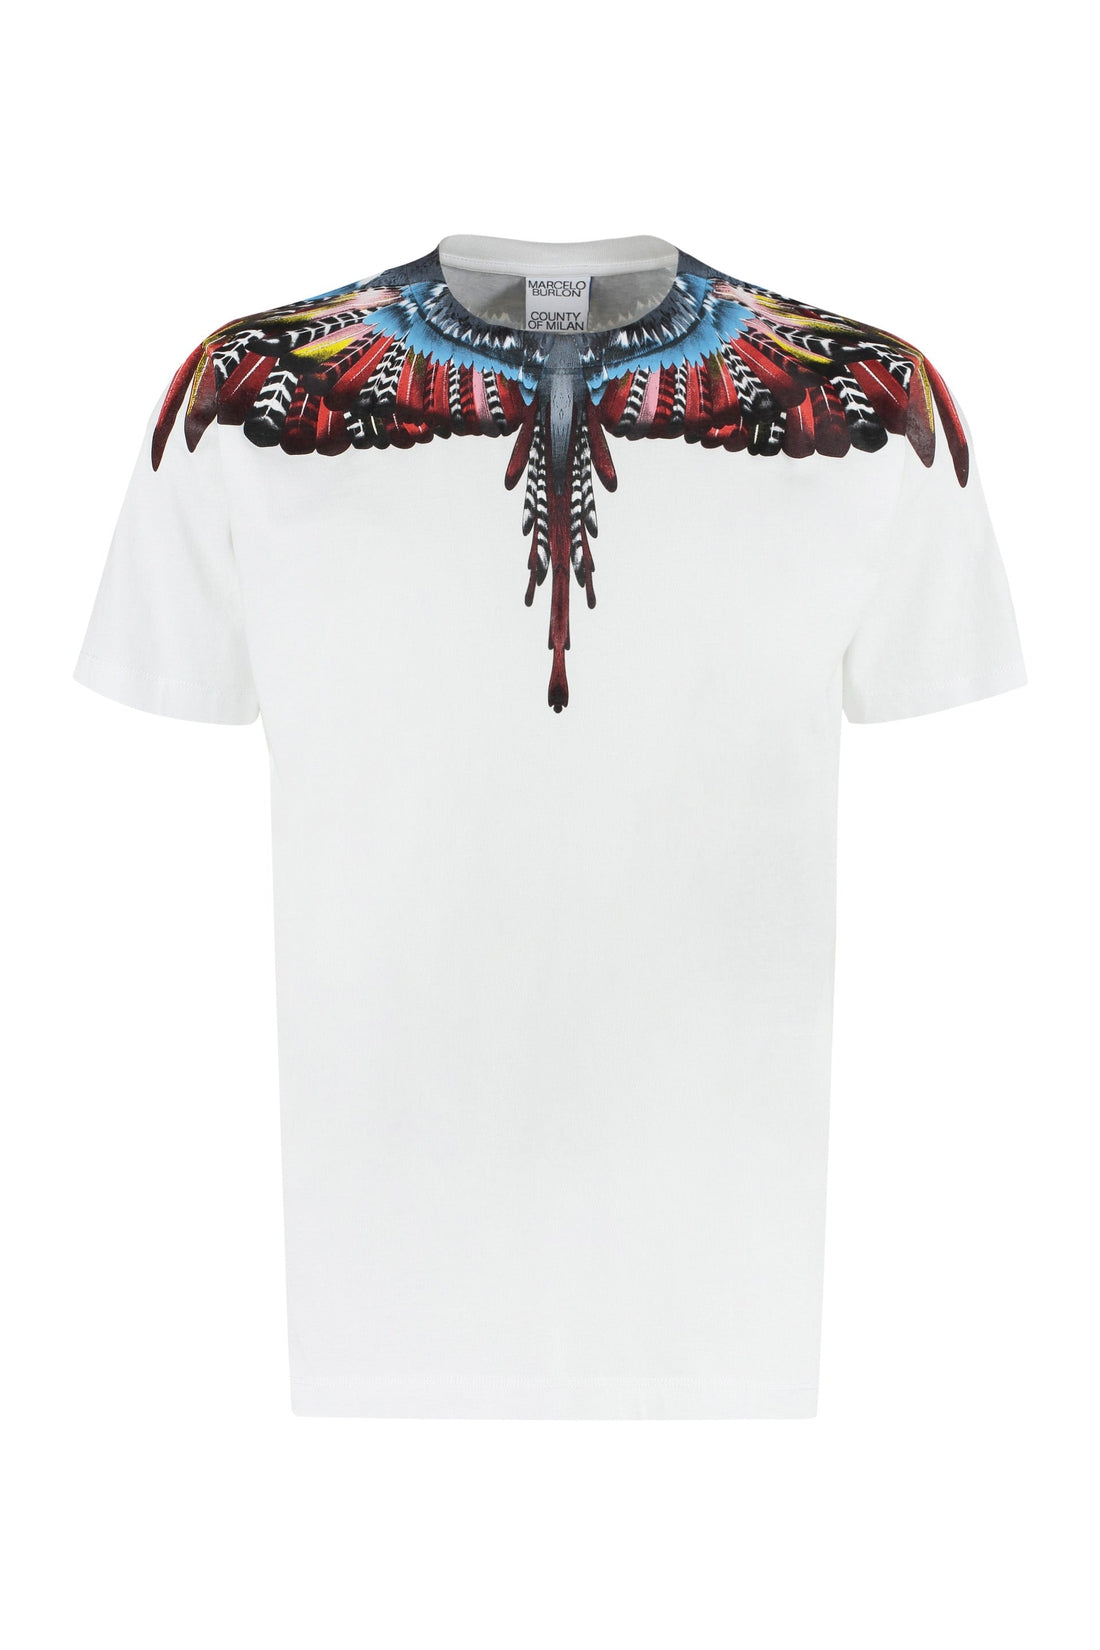 Marcelo Burlon County of Milan-OUTLET-SALE-Cotton crew-neck T-shirt-ARCHIVIST